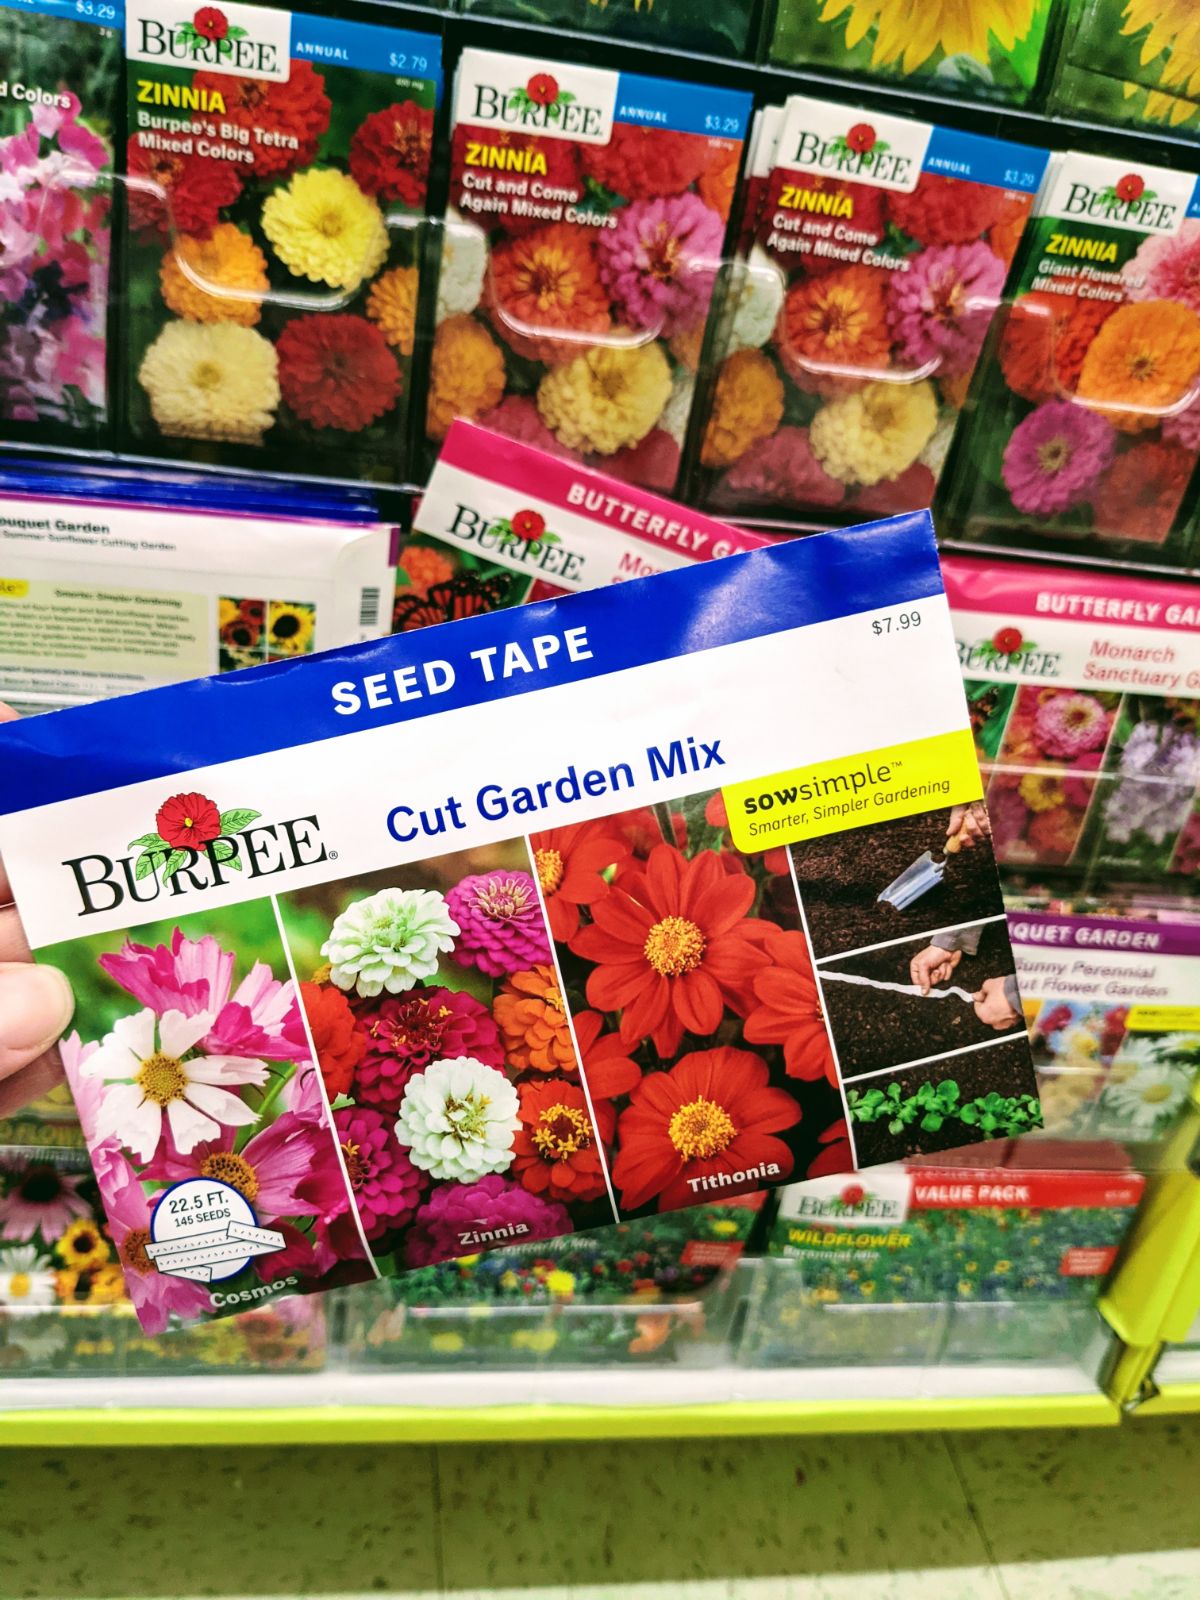 Burpee Brand Zinnia Seed Tape for Cut Flower Garden